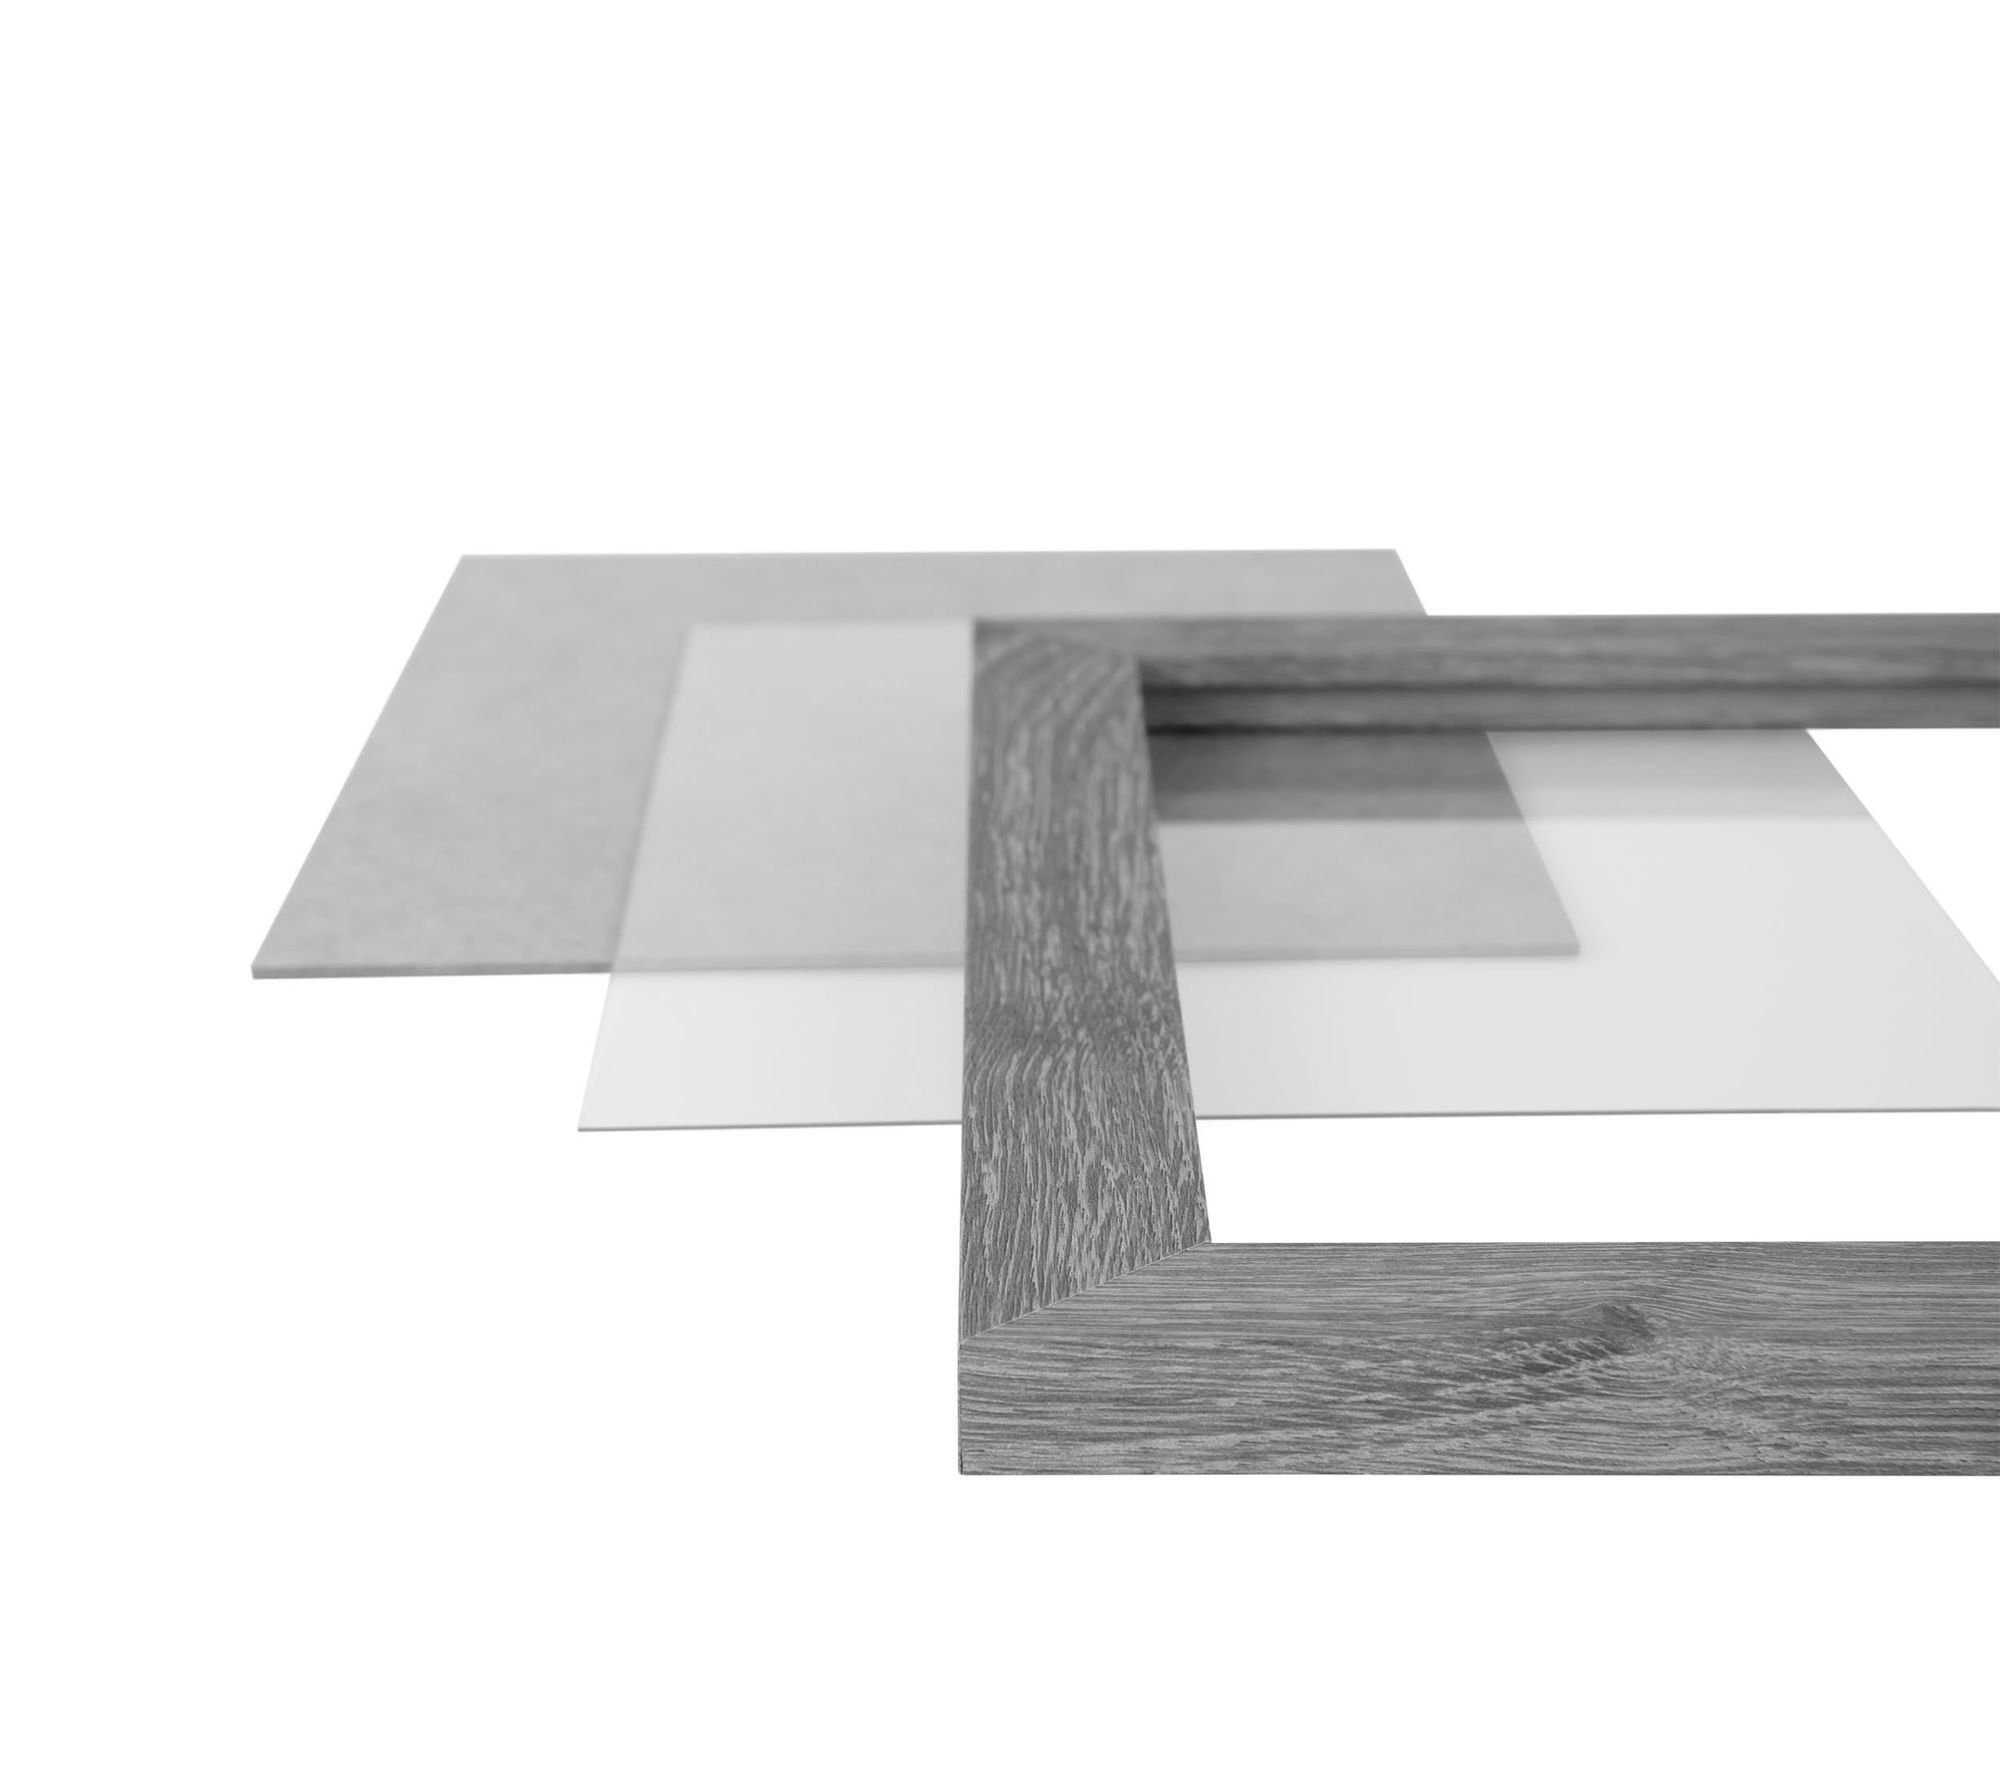 Rückwand eiche sonama 43x53 'Collage' CLAMARO eckiger Bilderrahmen handgefertigt Holz Maß inkl. Aufhänger Rahmen nach in FSC® Bilderrahmen Moderner Acrylglas, Clamaro und MDF